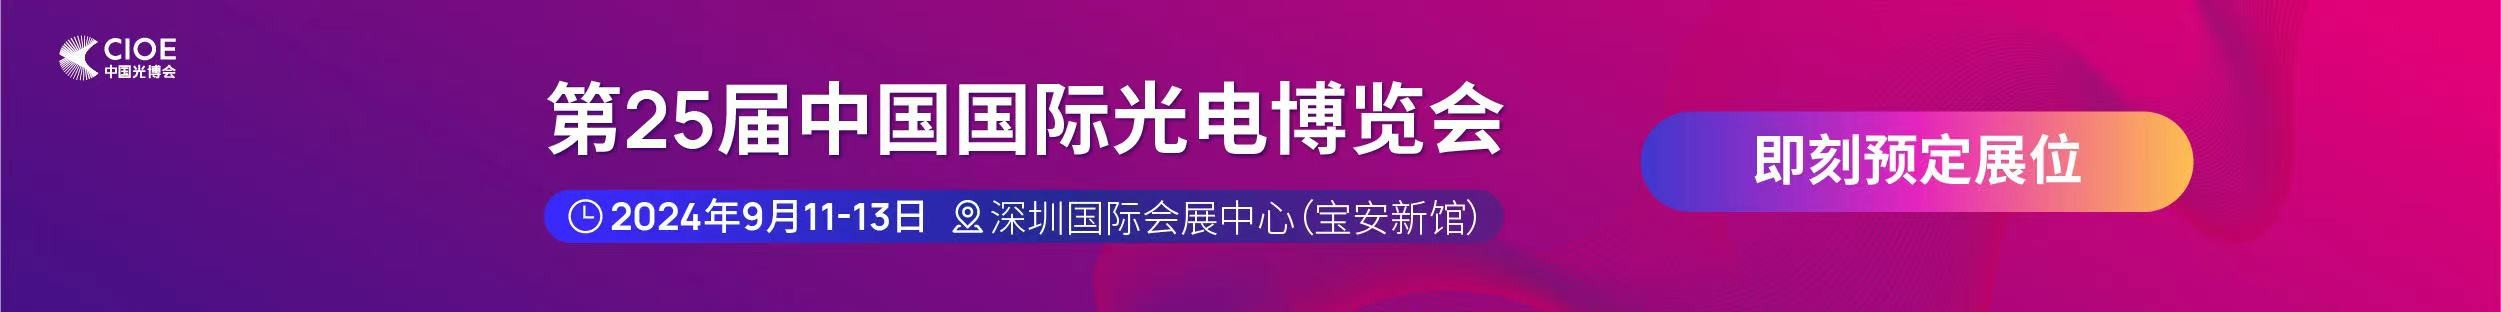 365体育官方唯一入口公司受邀参展第25届中国国际光电博览会